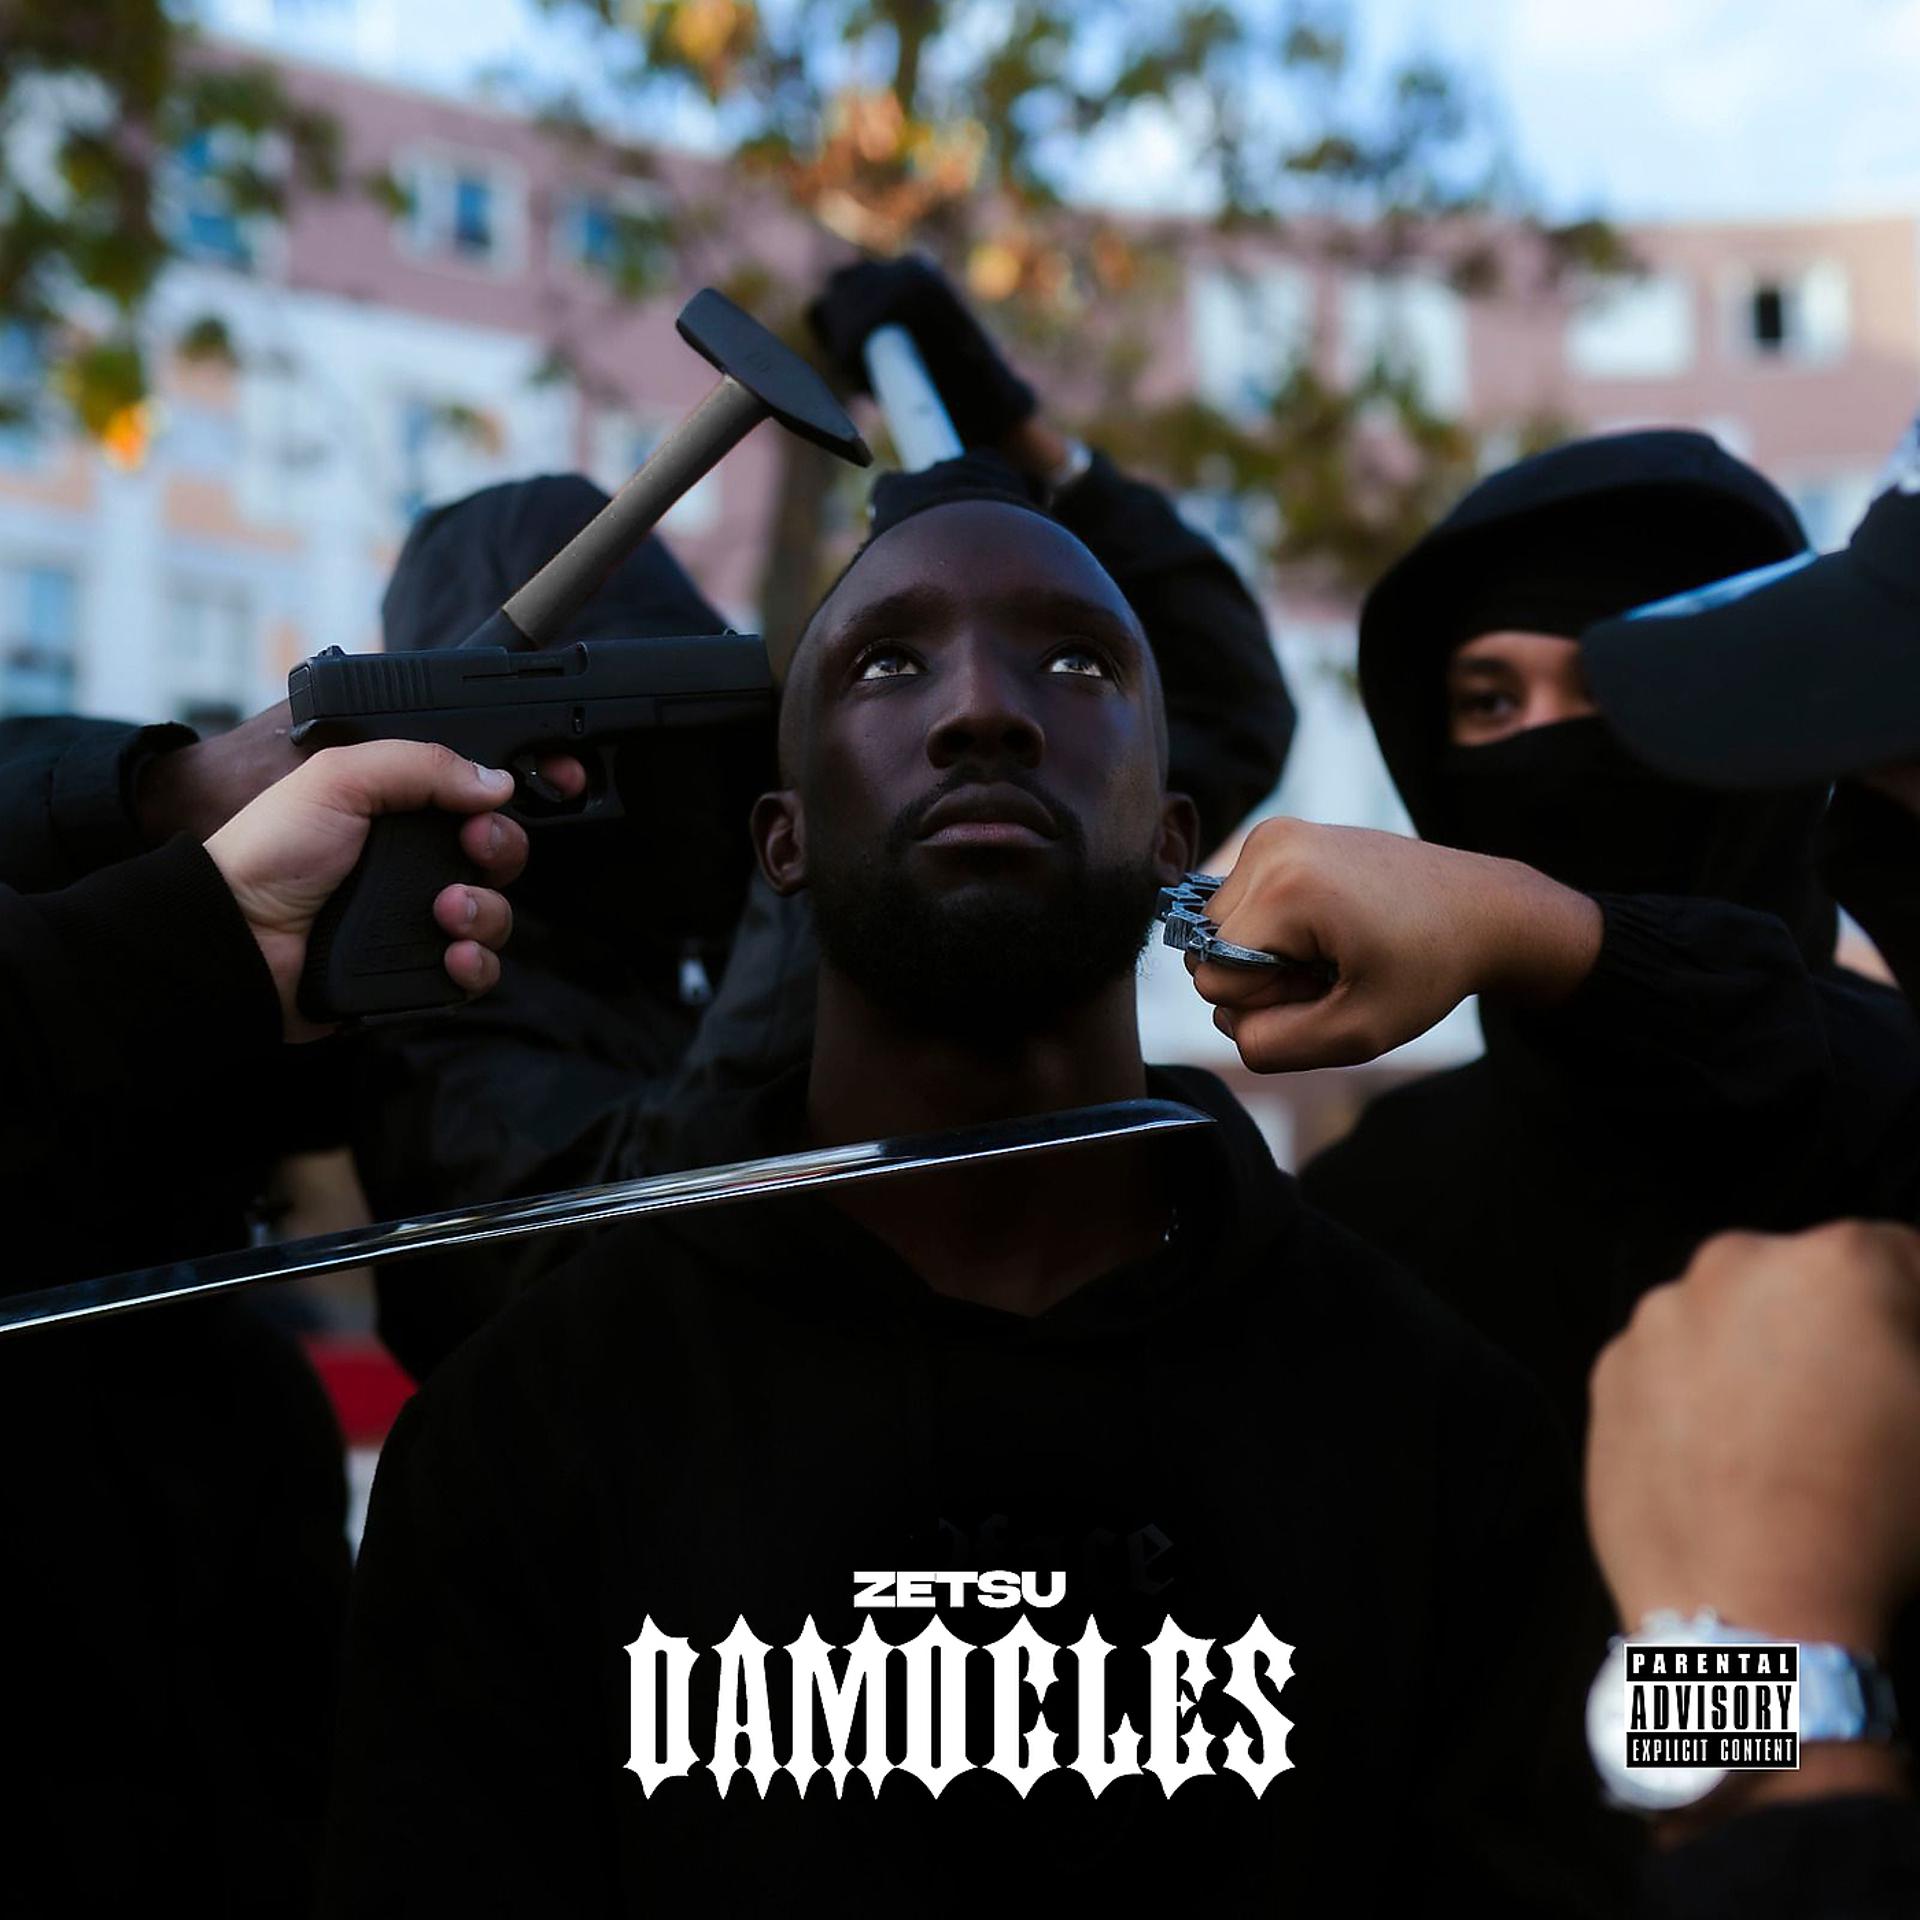 Постер альбома Damoclès